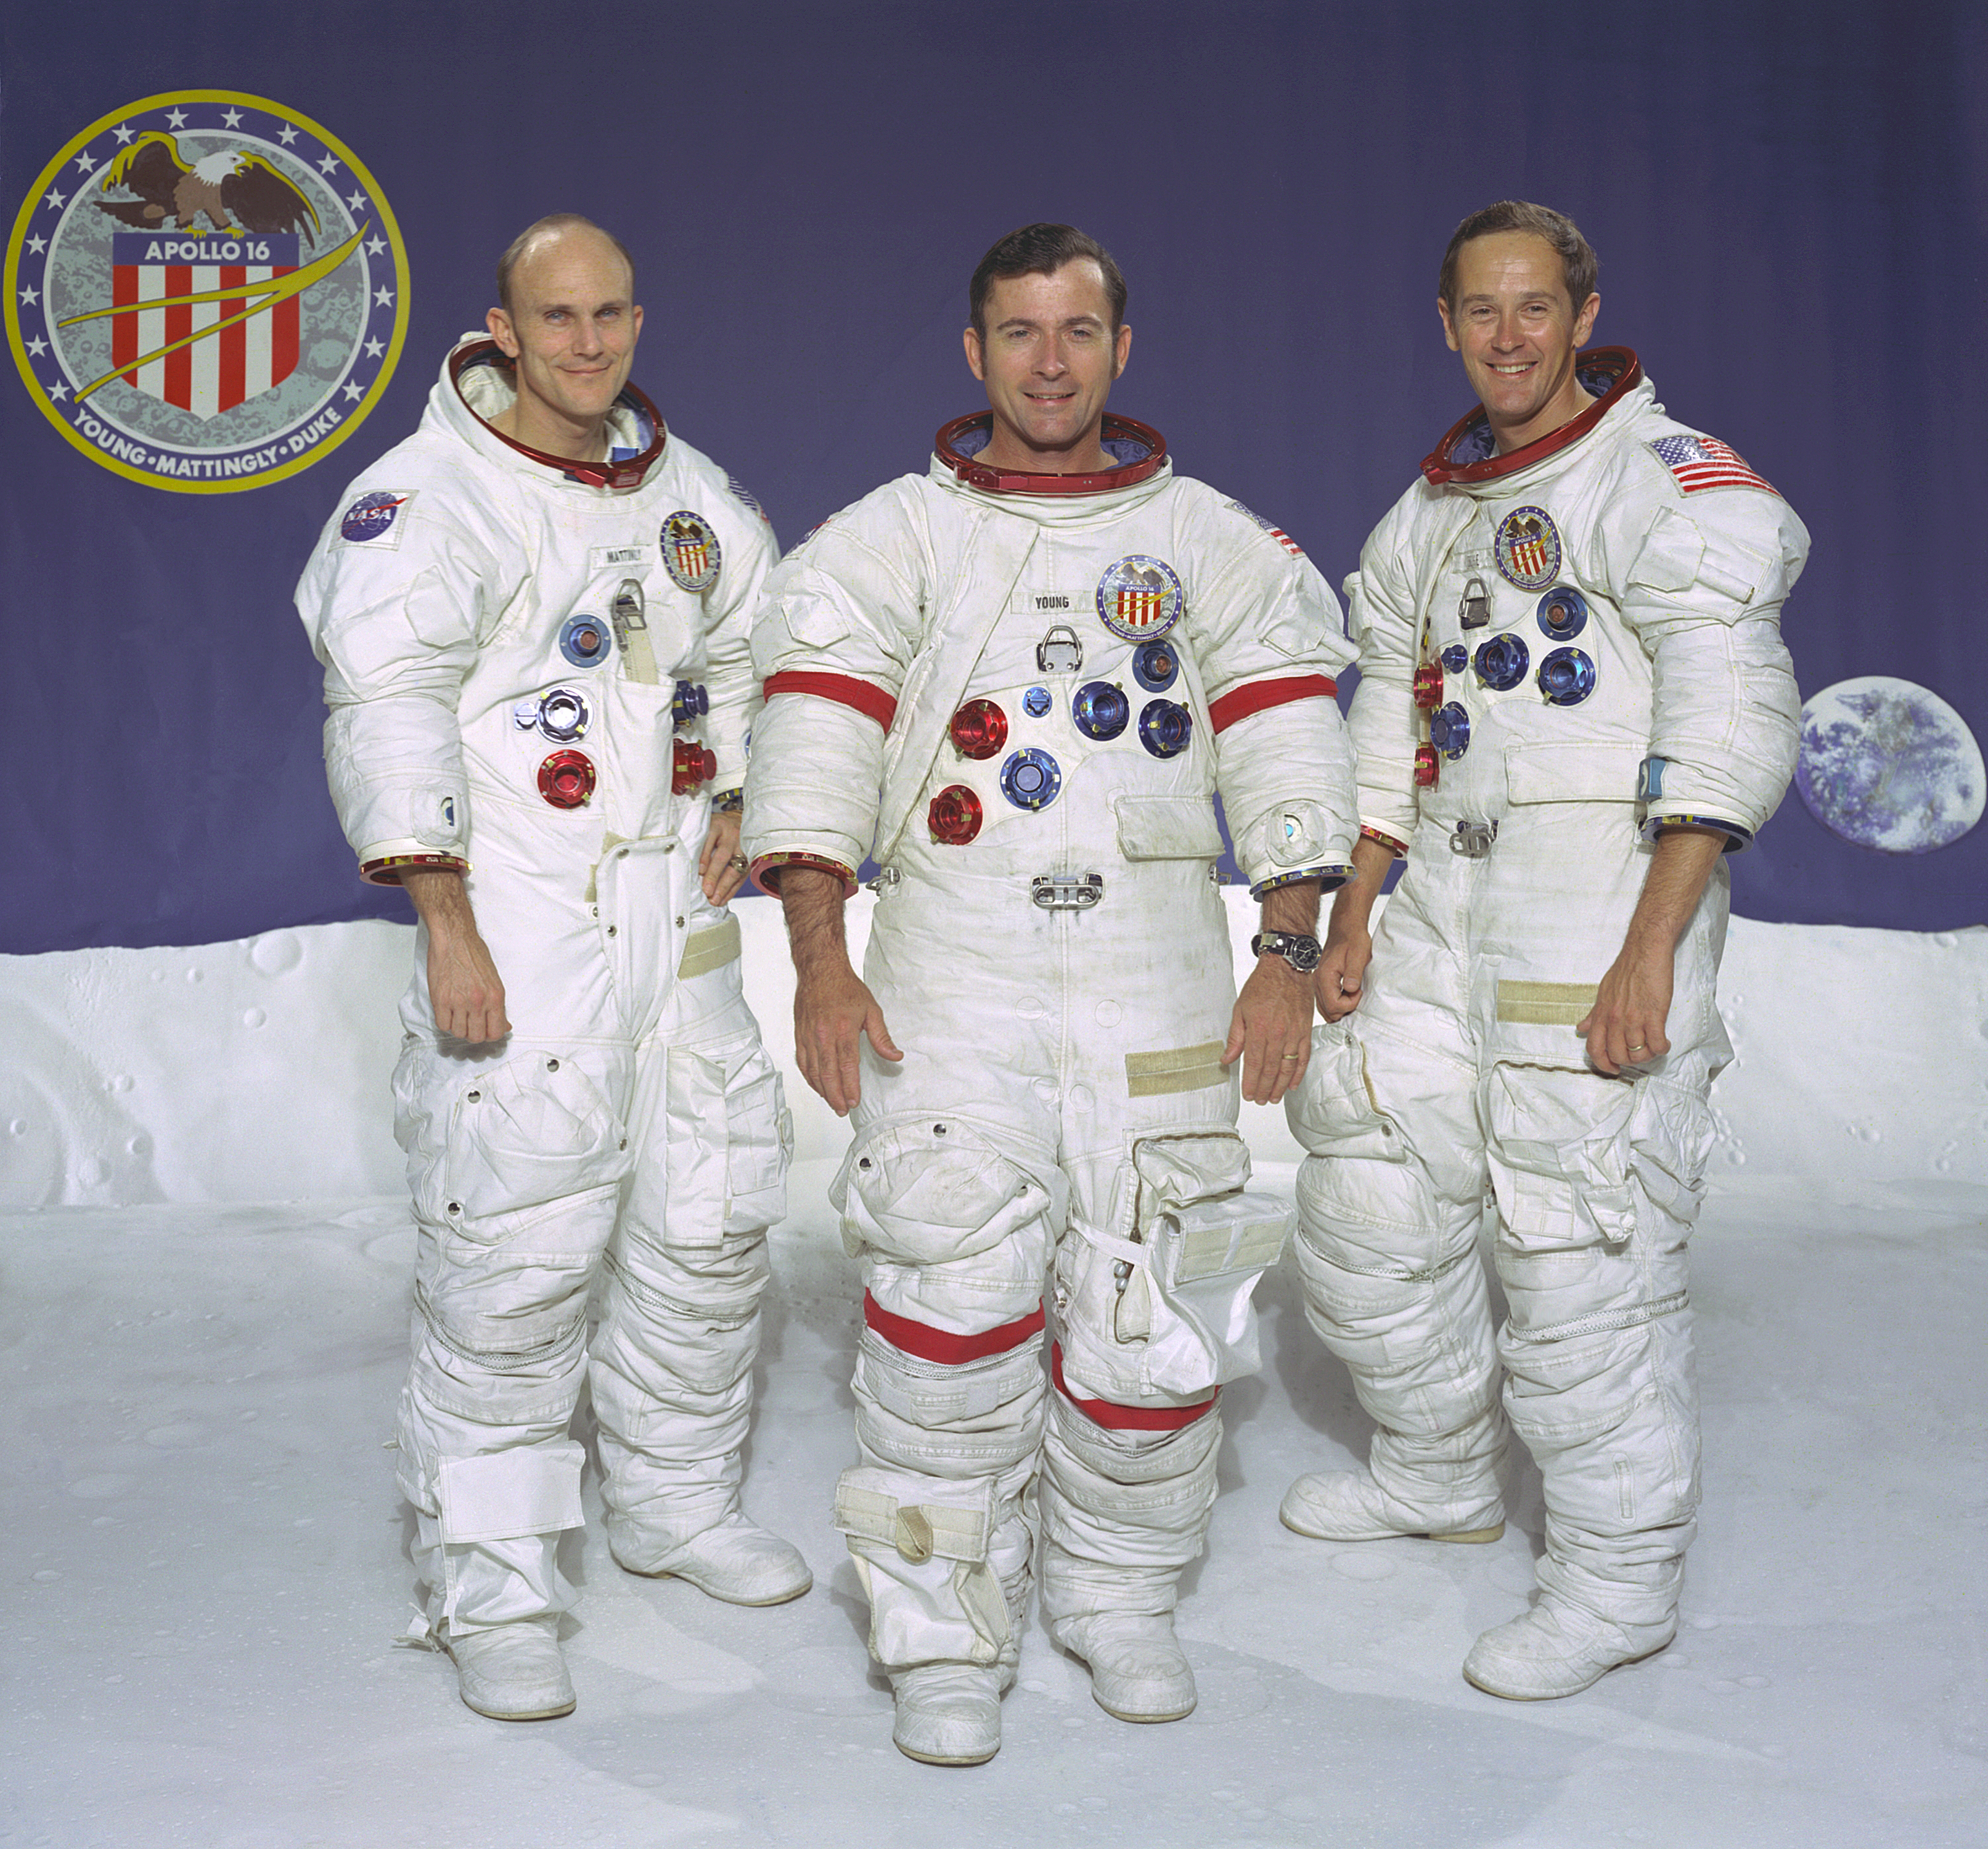 The Apollo 16 Prime Crew - GPN-2000-001134